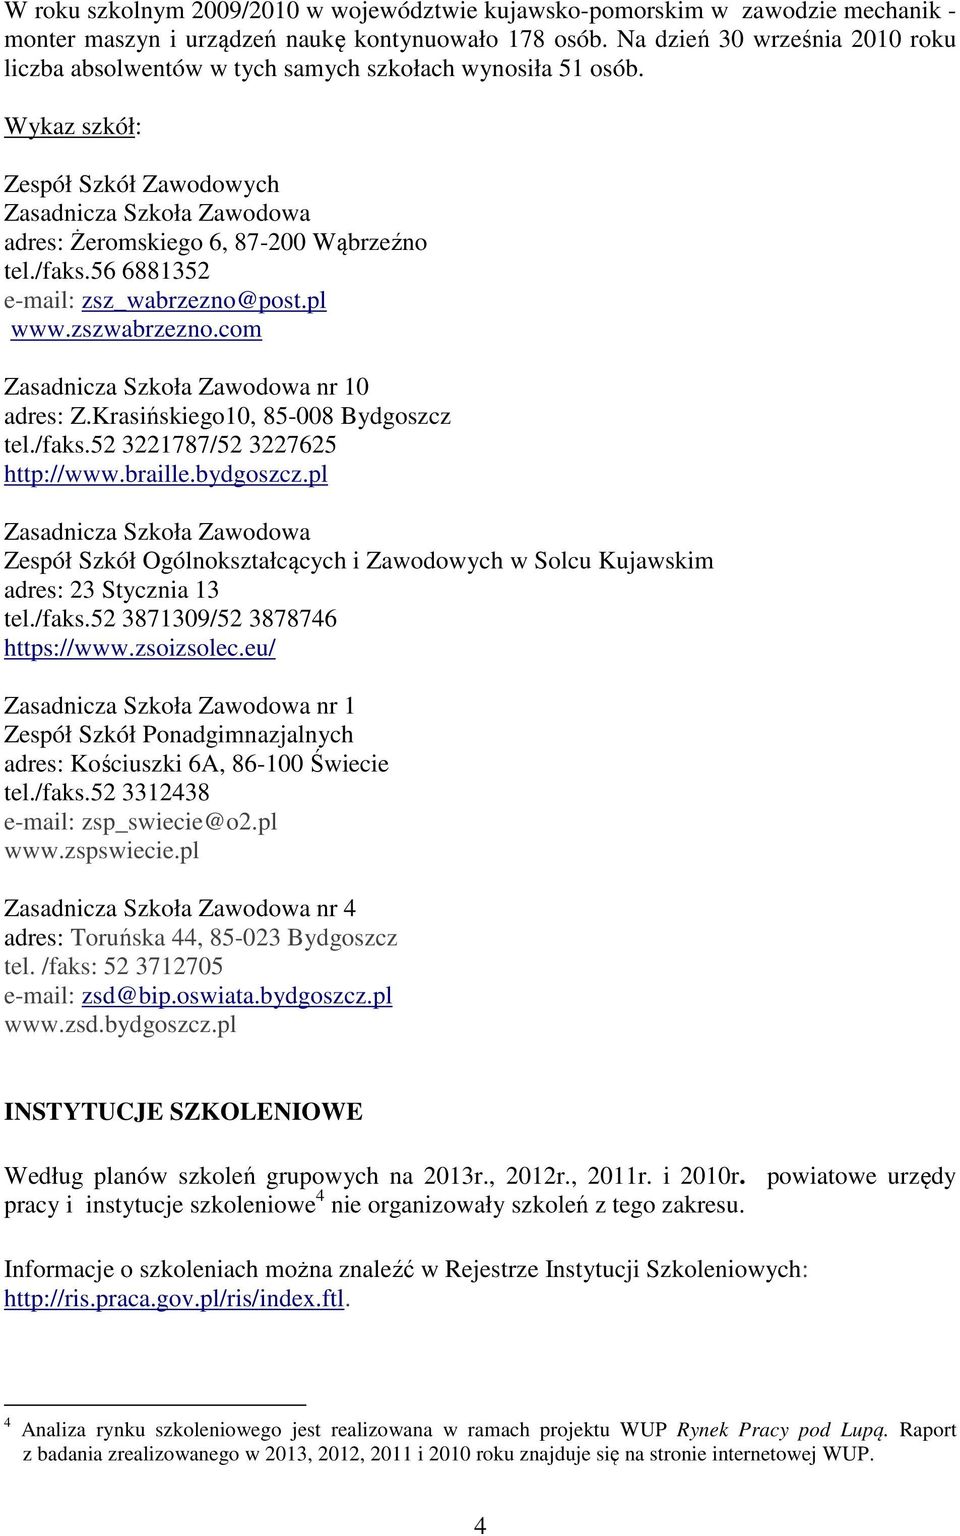 /faks.56 6881352 e-mail: zsz_wabrzezno@post.pl www.zszwabrzezno.com Zasadnicza Szkoła Zawodowa nr 10 adres: Z.Krasińskiego10, 85-008 Bydgoszcz tel./faks.52 3221787/52 3227625 http://www.braille.